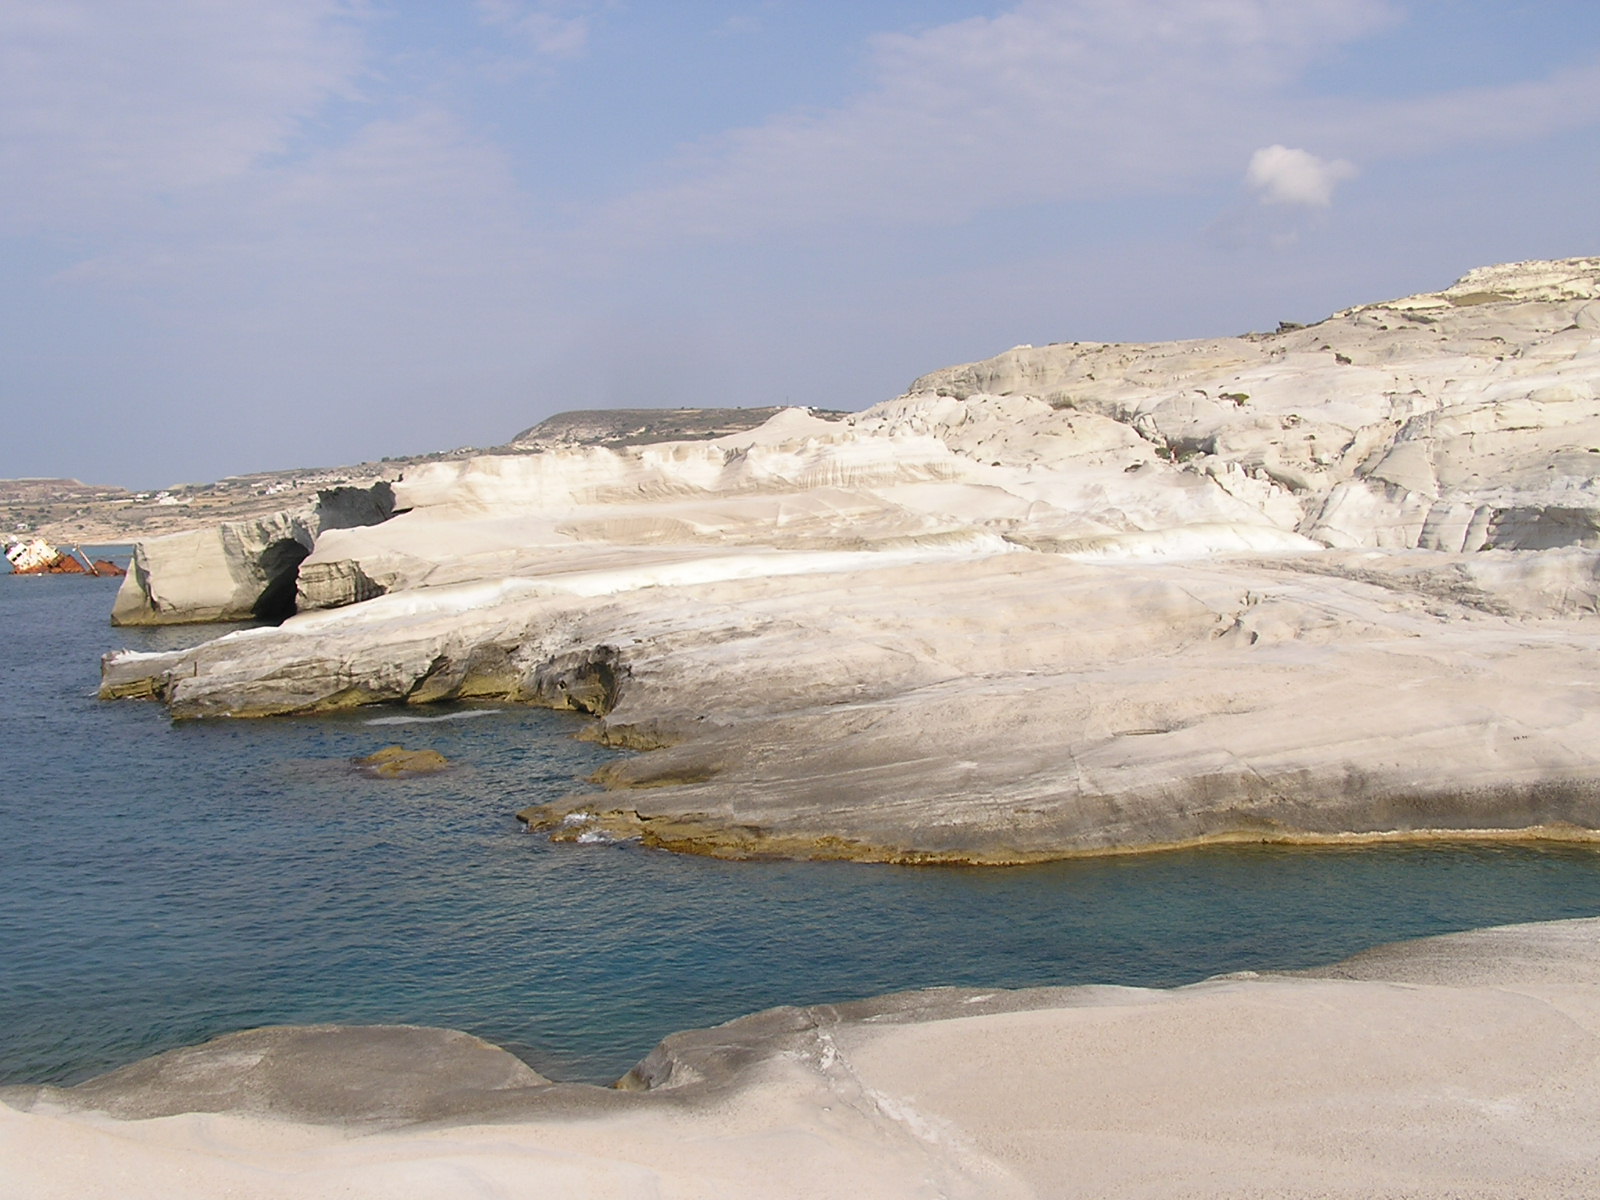 Ennek a sziklahaséknak a túlsó végén található az a keskeny homokos ‘föveny‘, ahol be lehet merészkedni a tengerbe